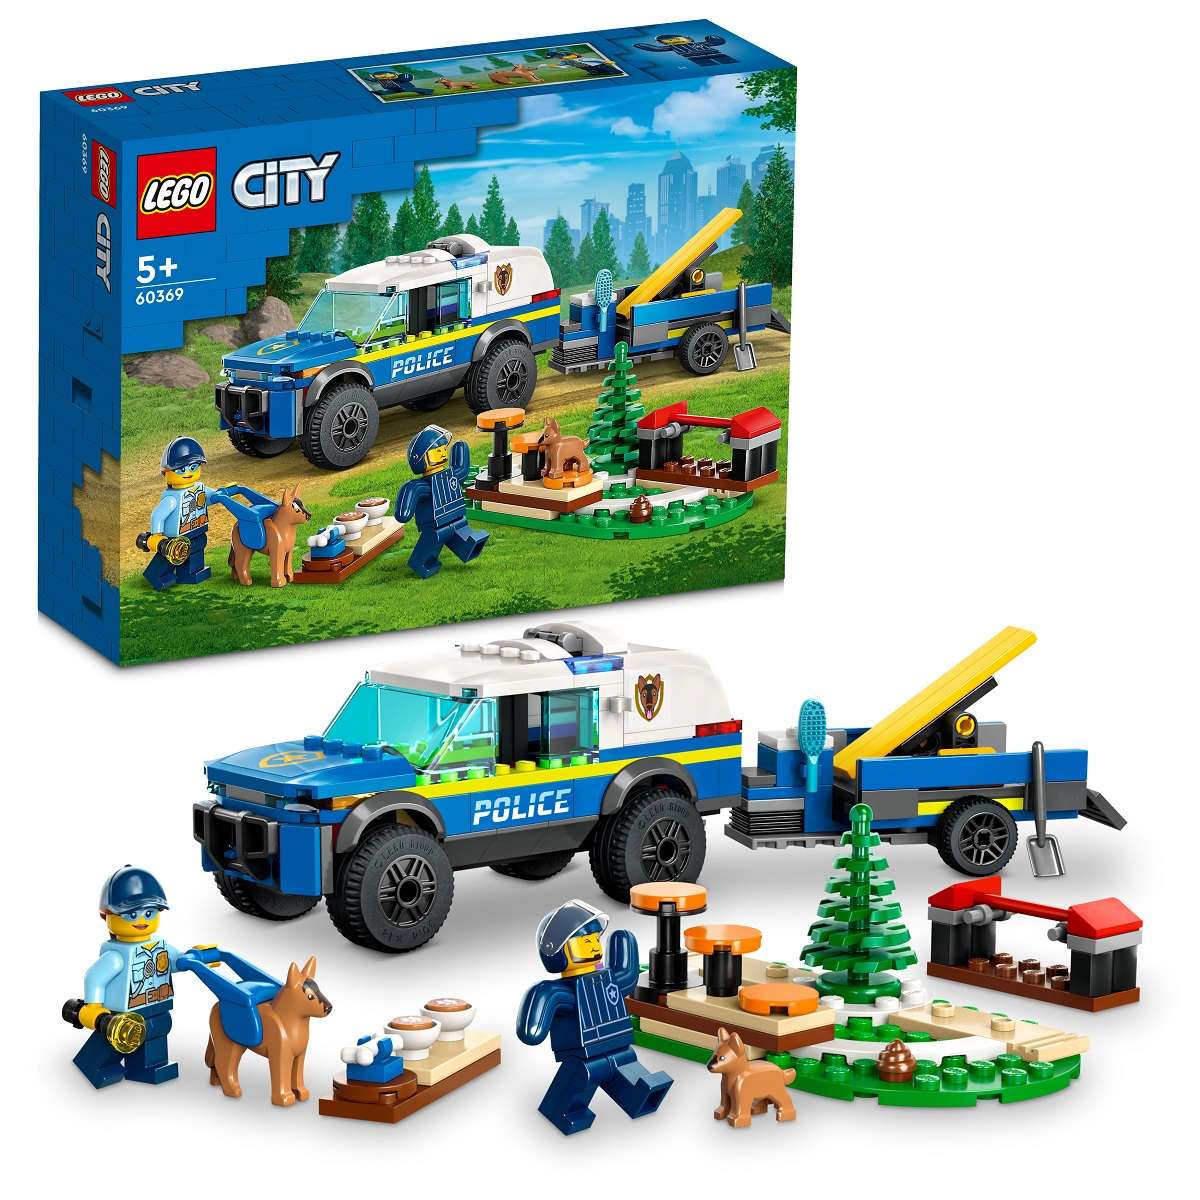 LEGO City 60369 Mobiles Polizeihunde-Training 60369